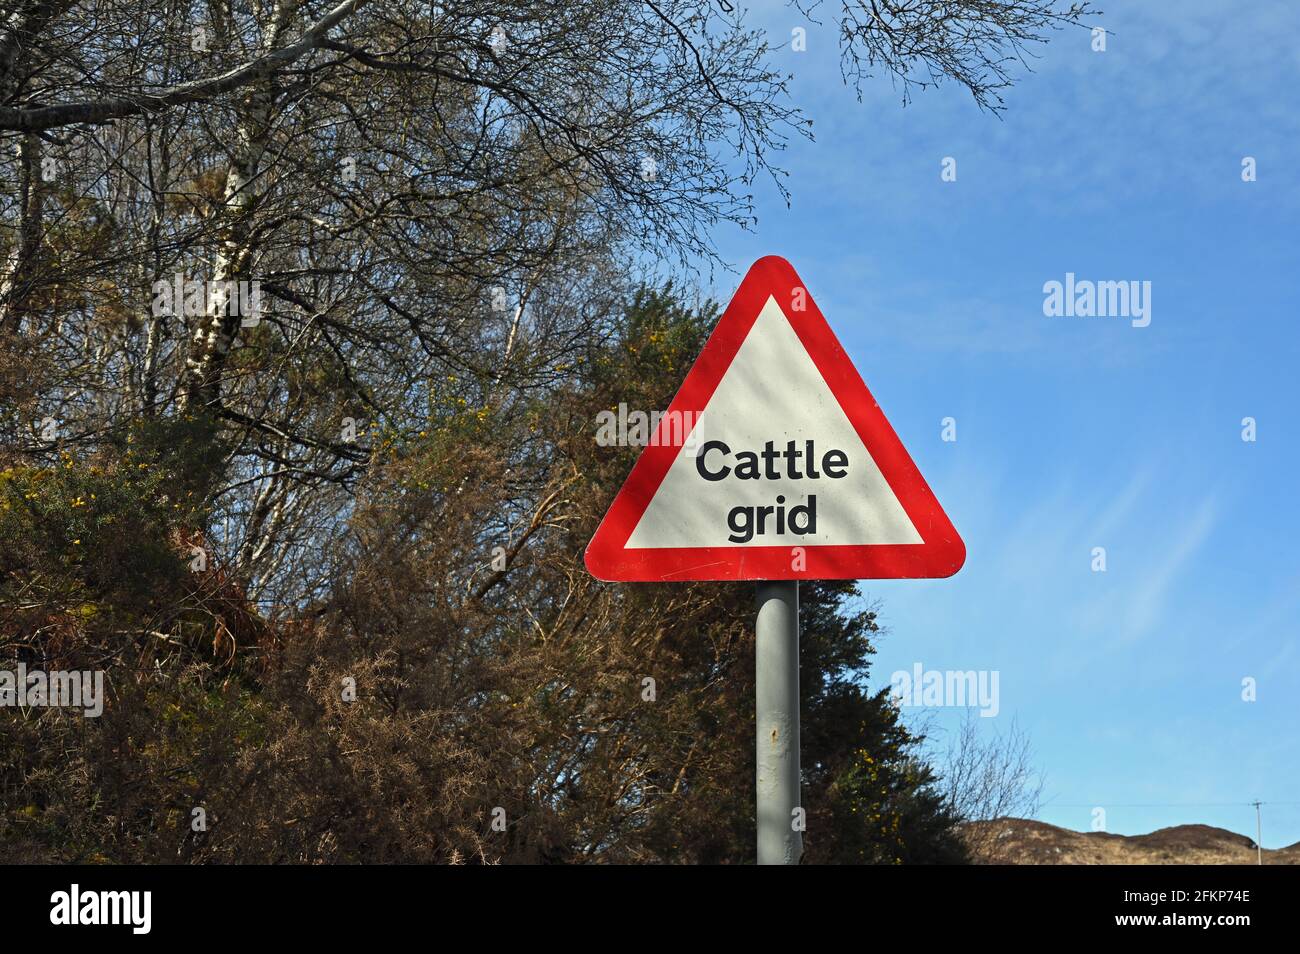 Affiche de grille de bétail, texte noir sur fond blanc dans un triangle rouge. Panneau routier avec arrière-plan d'arbres et ciel bleu. Prise en Écosse, Royaume-Uni. Banque D'Images